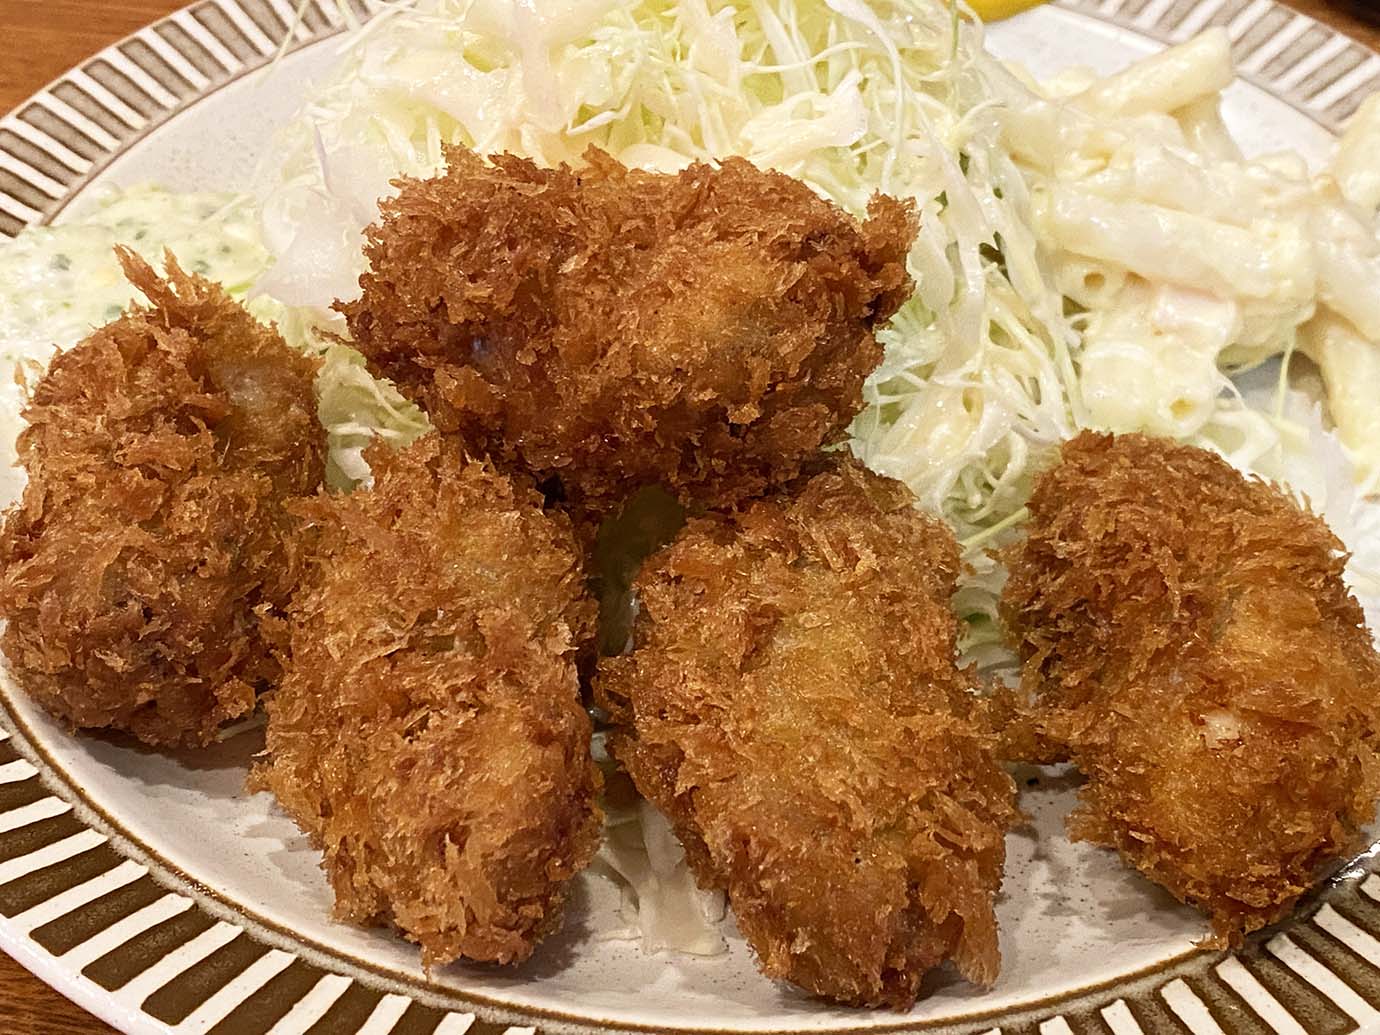 【絶対グルメ】日本一の牡蠣と断言する洋食屋のカキフライを食べに行ってみた / 洋食 GOTOO